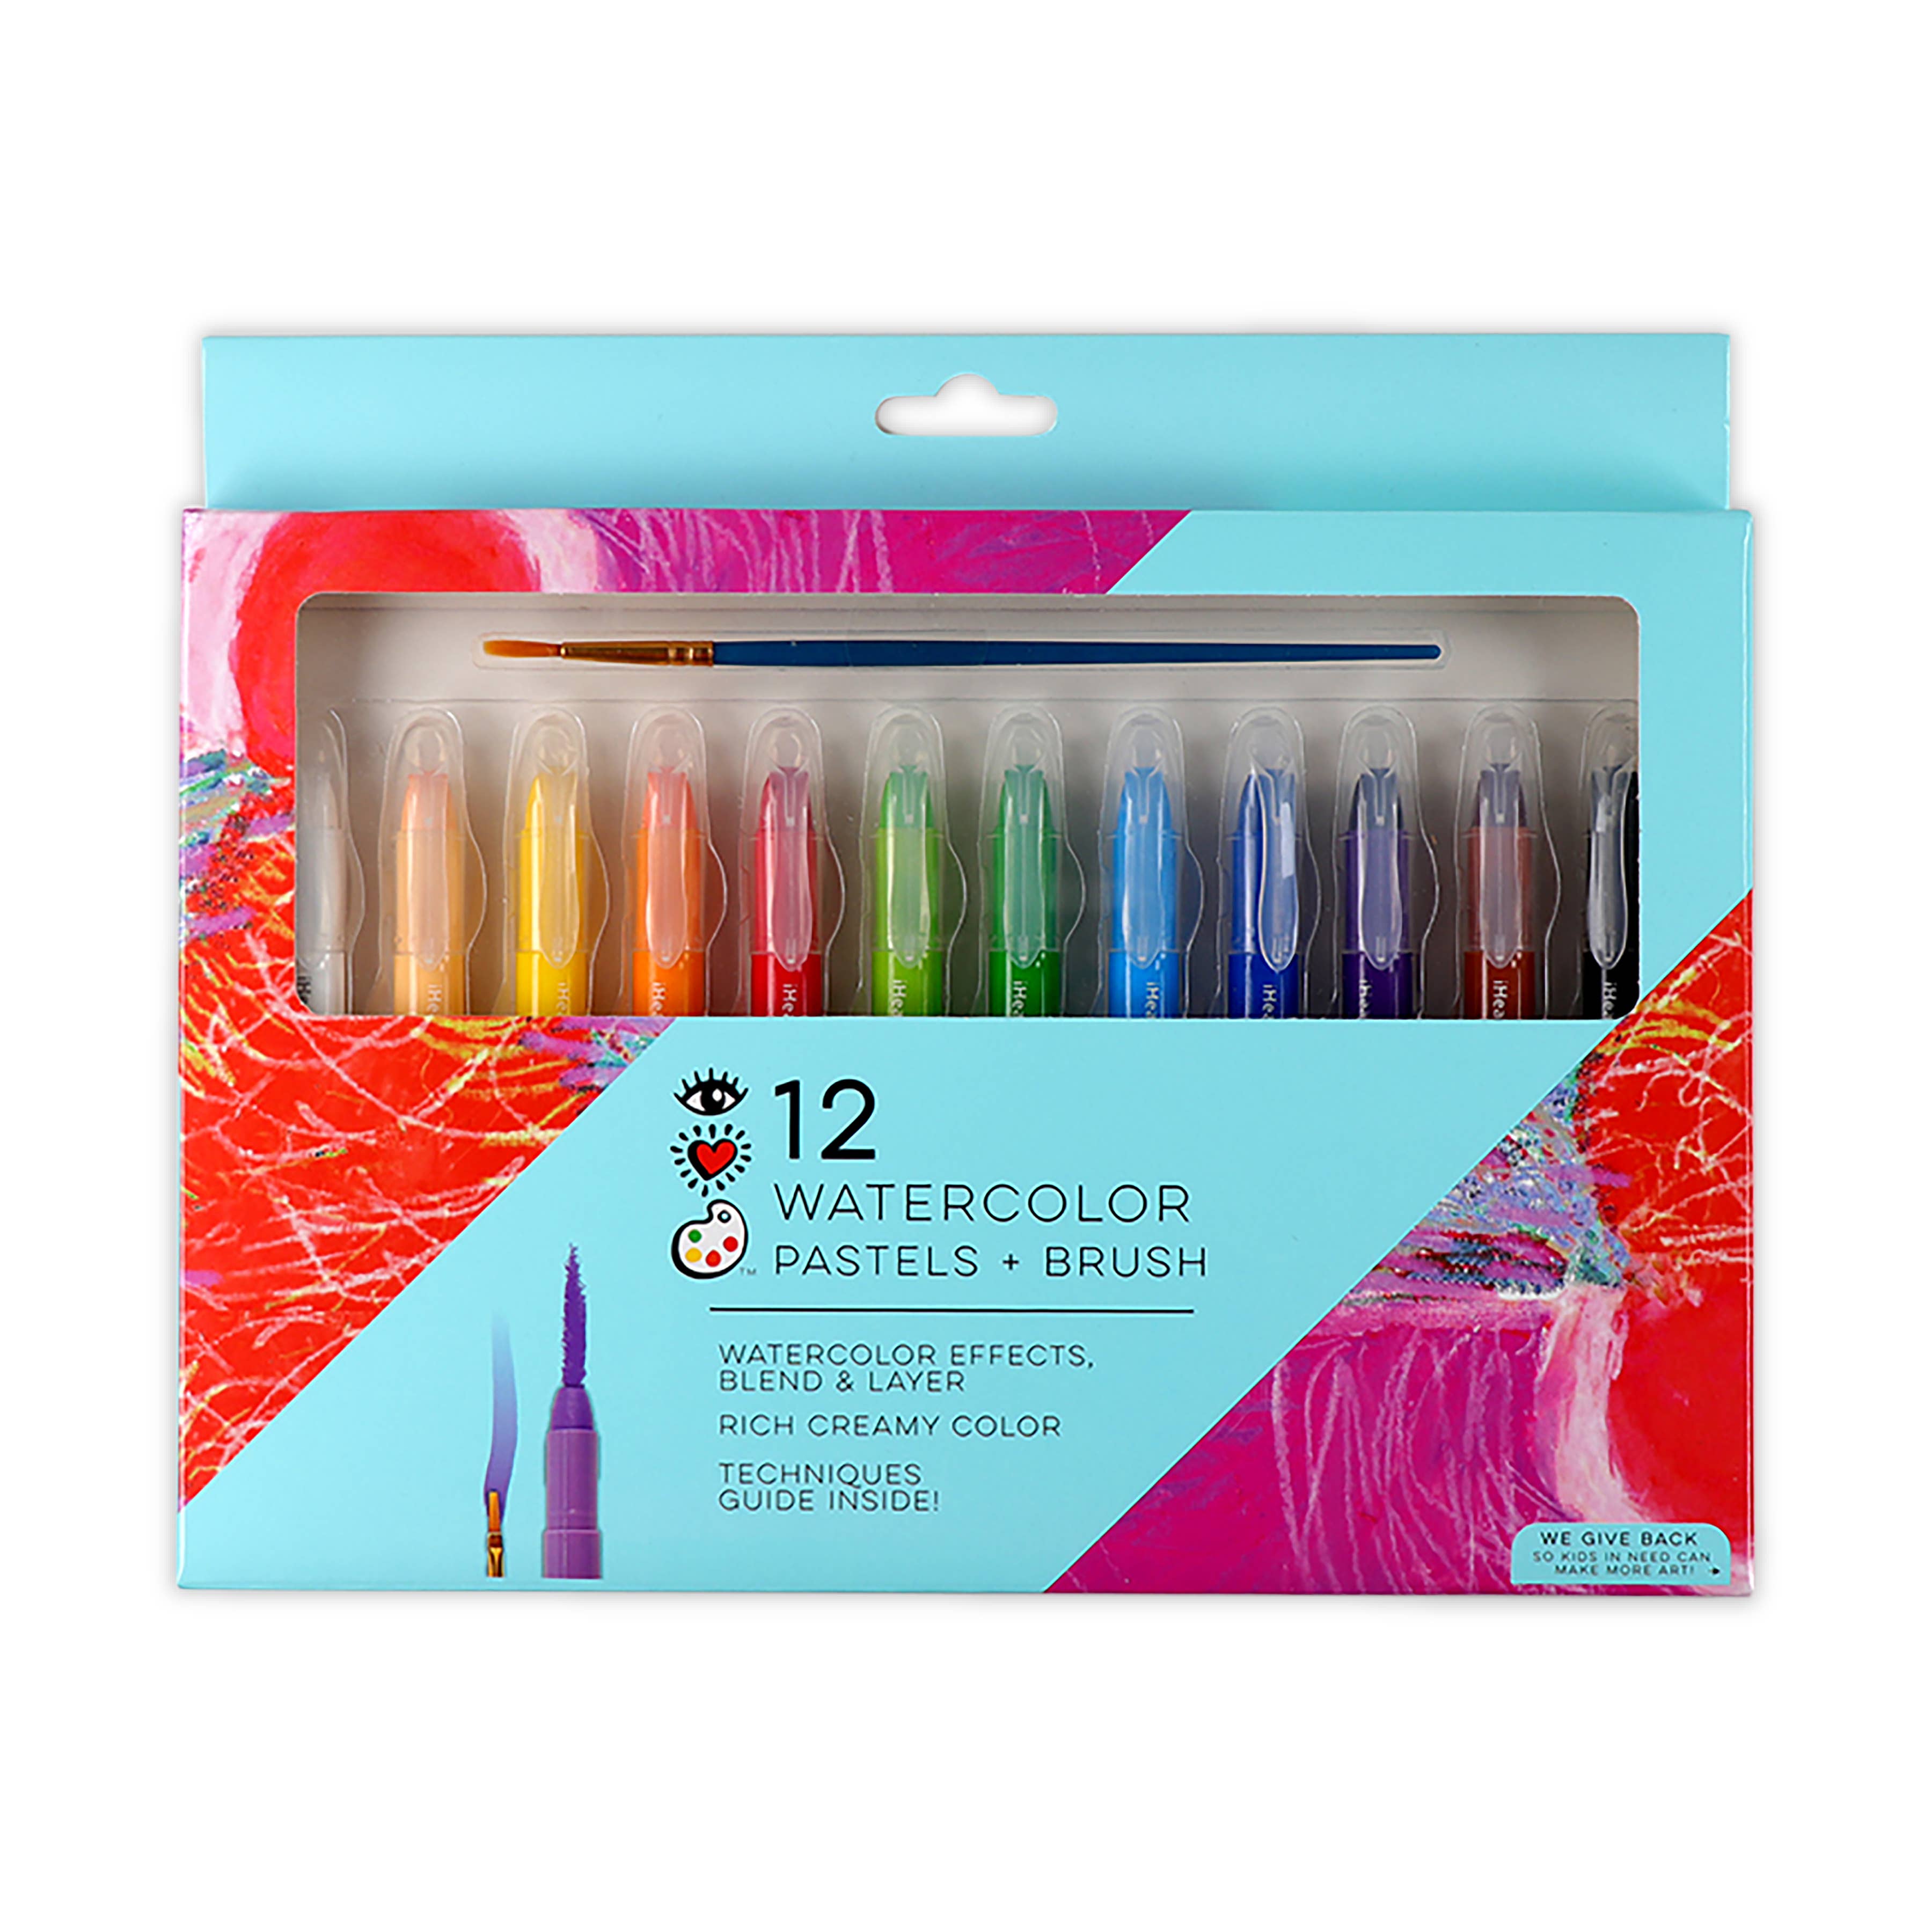 Watercolor Pastels + Brush